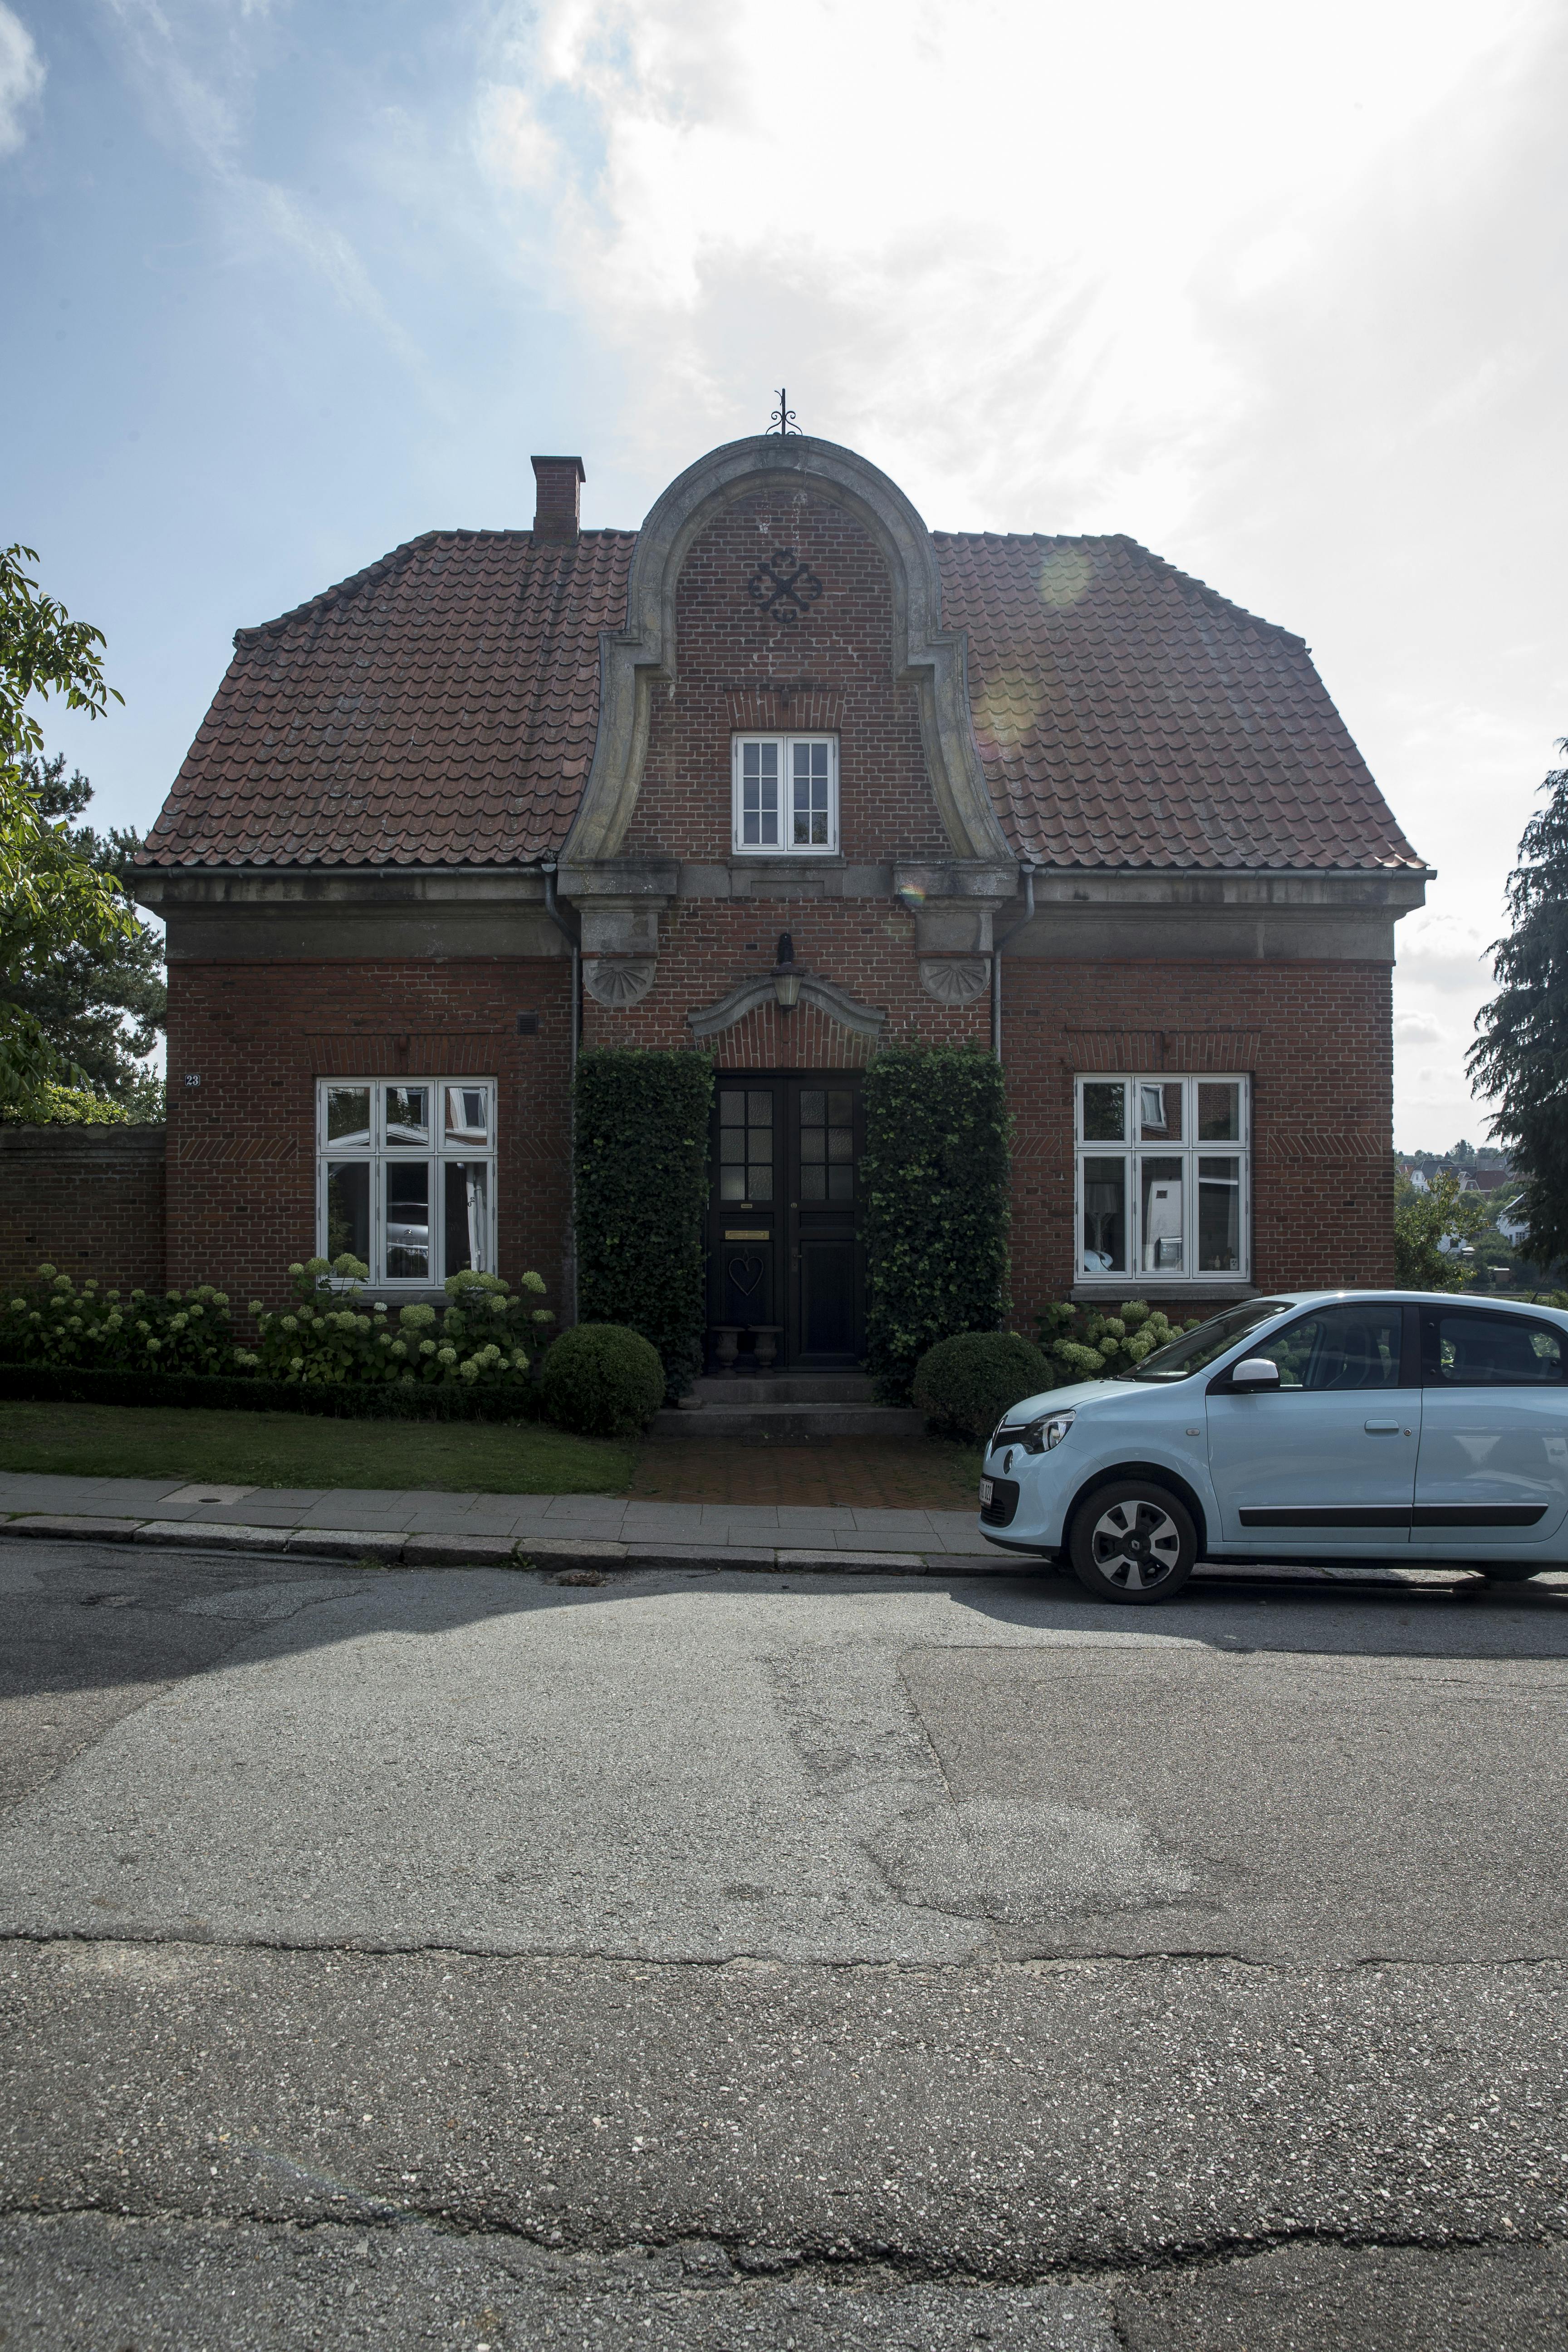 Mascha Vang og Troels Korhn Dehli købte i 2018 huset i Kolding for 6 mio. kr.
